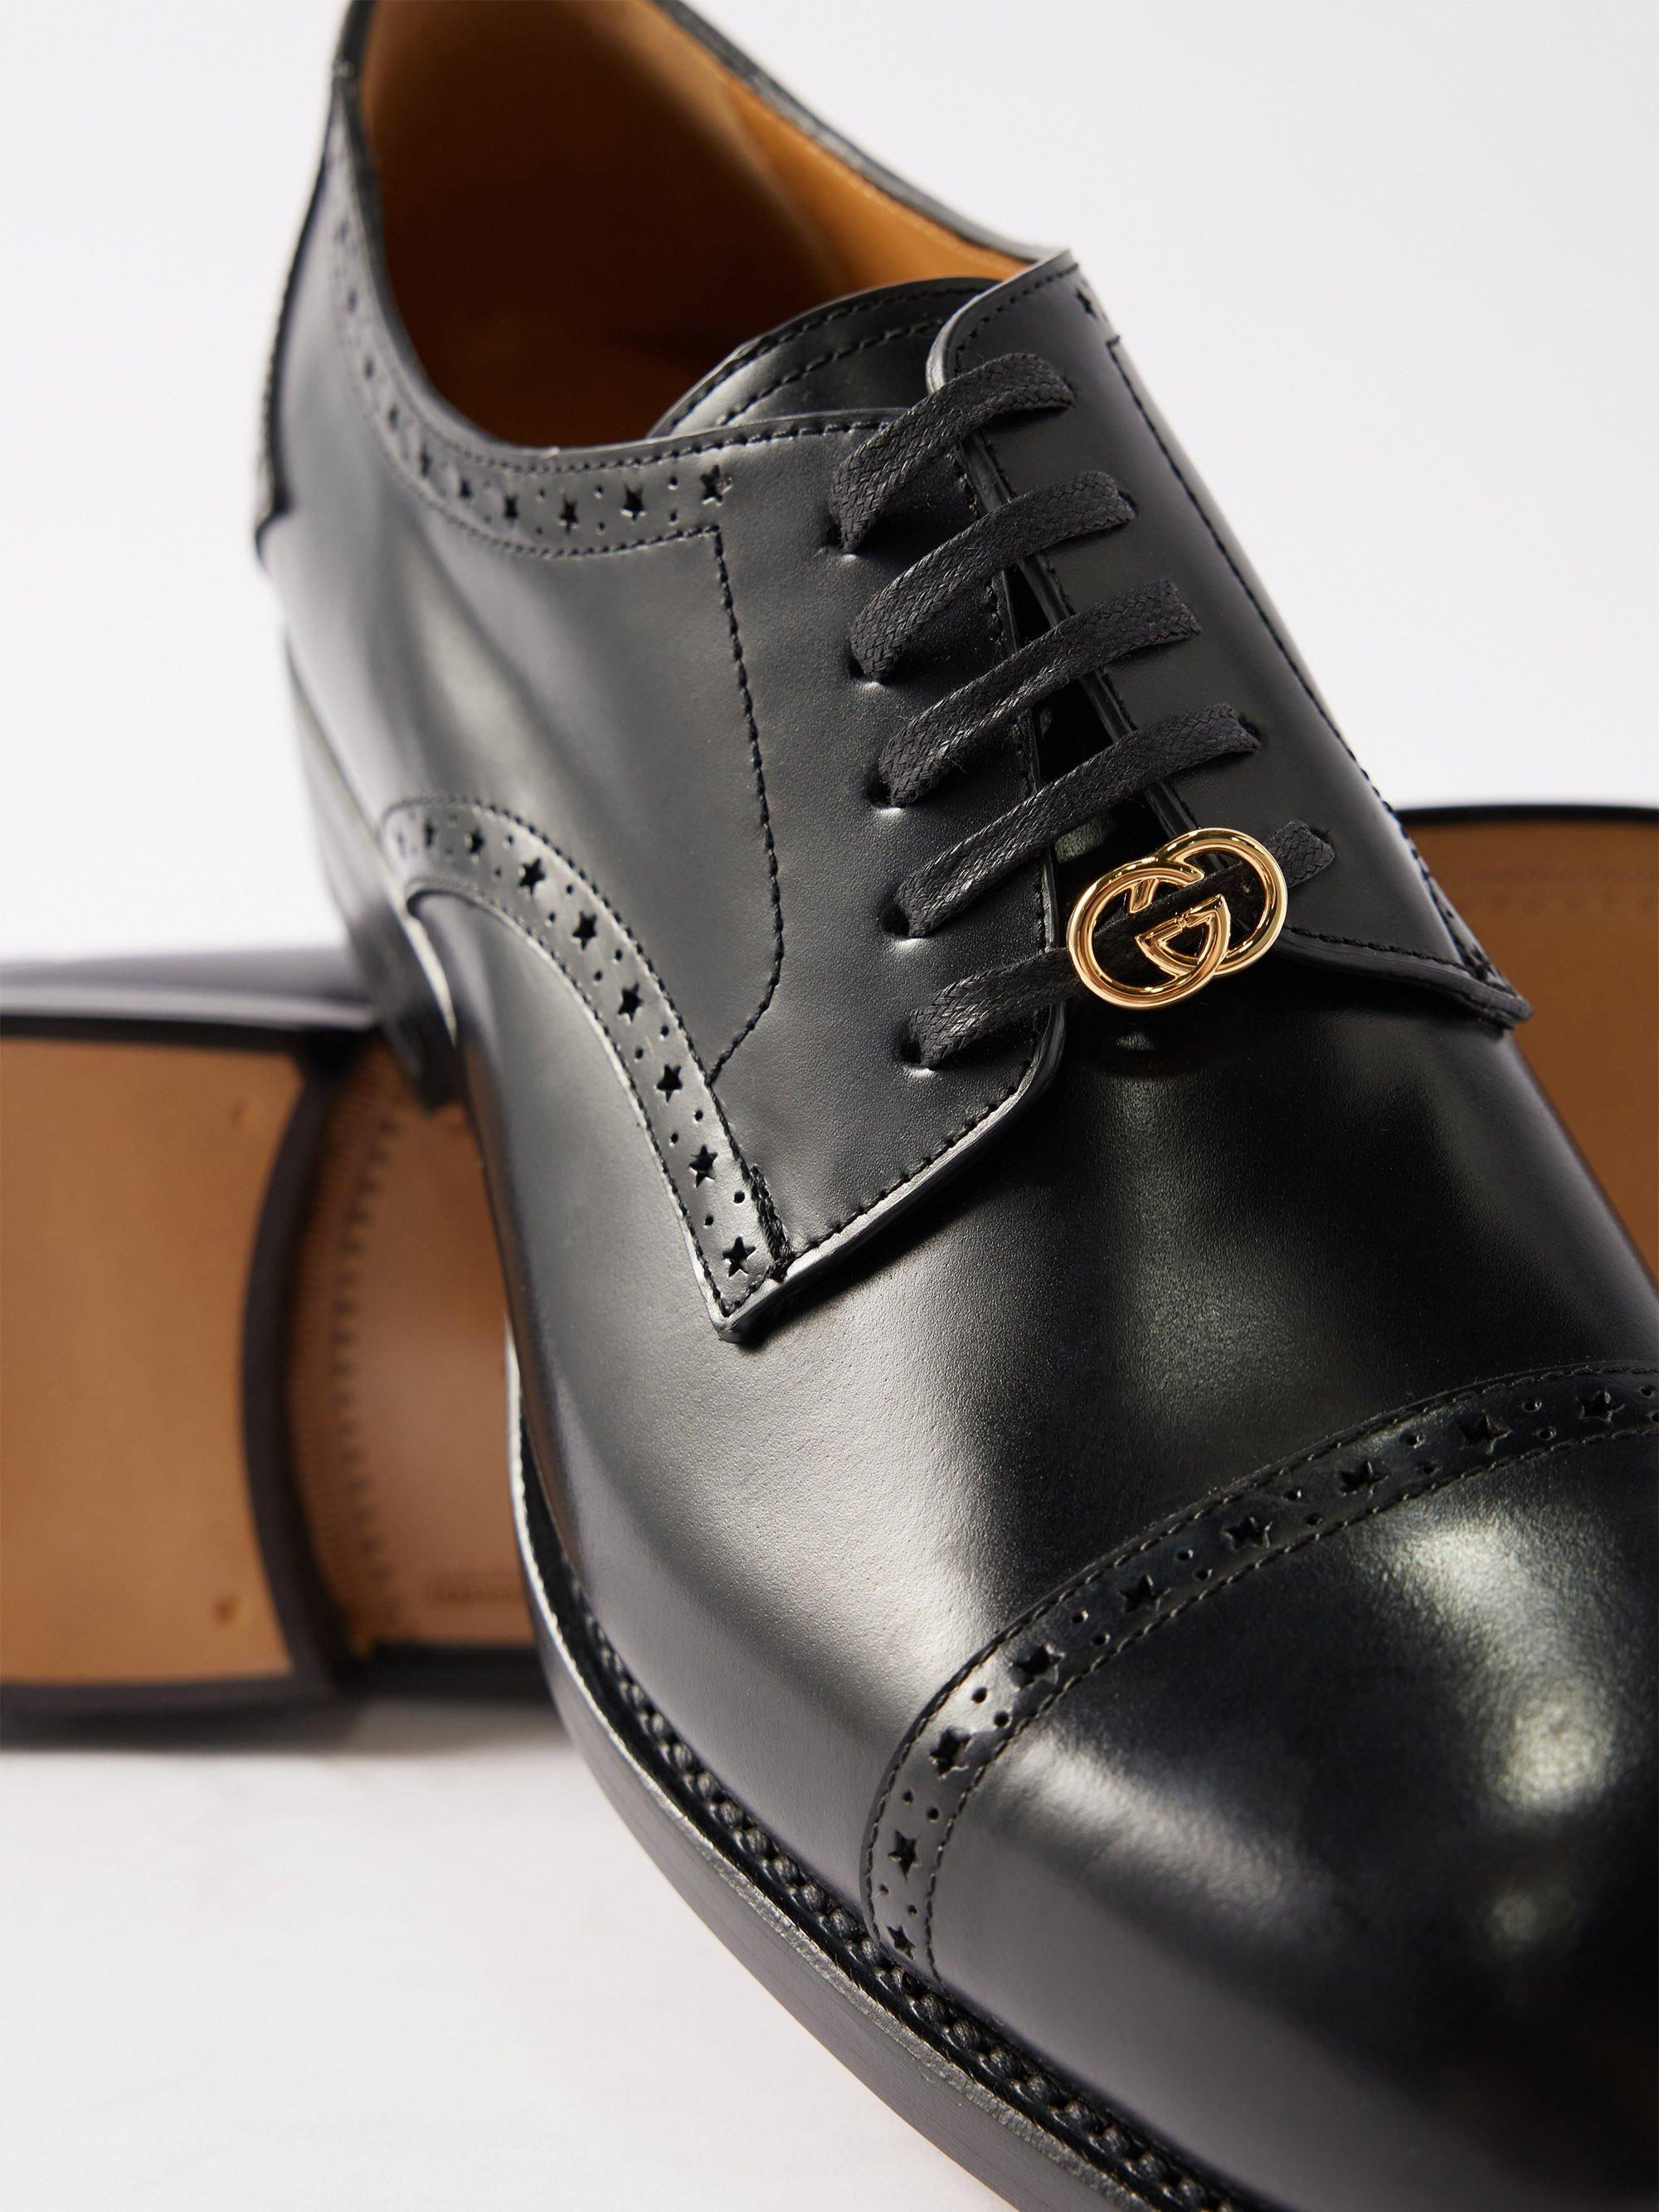 Men's Gucci Oxfords & Derby Shoes